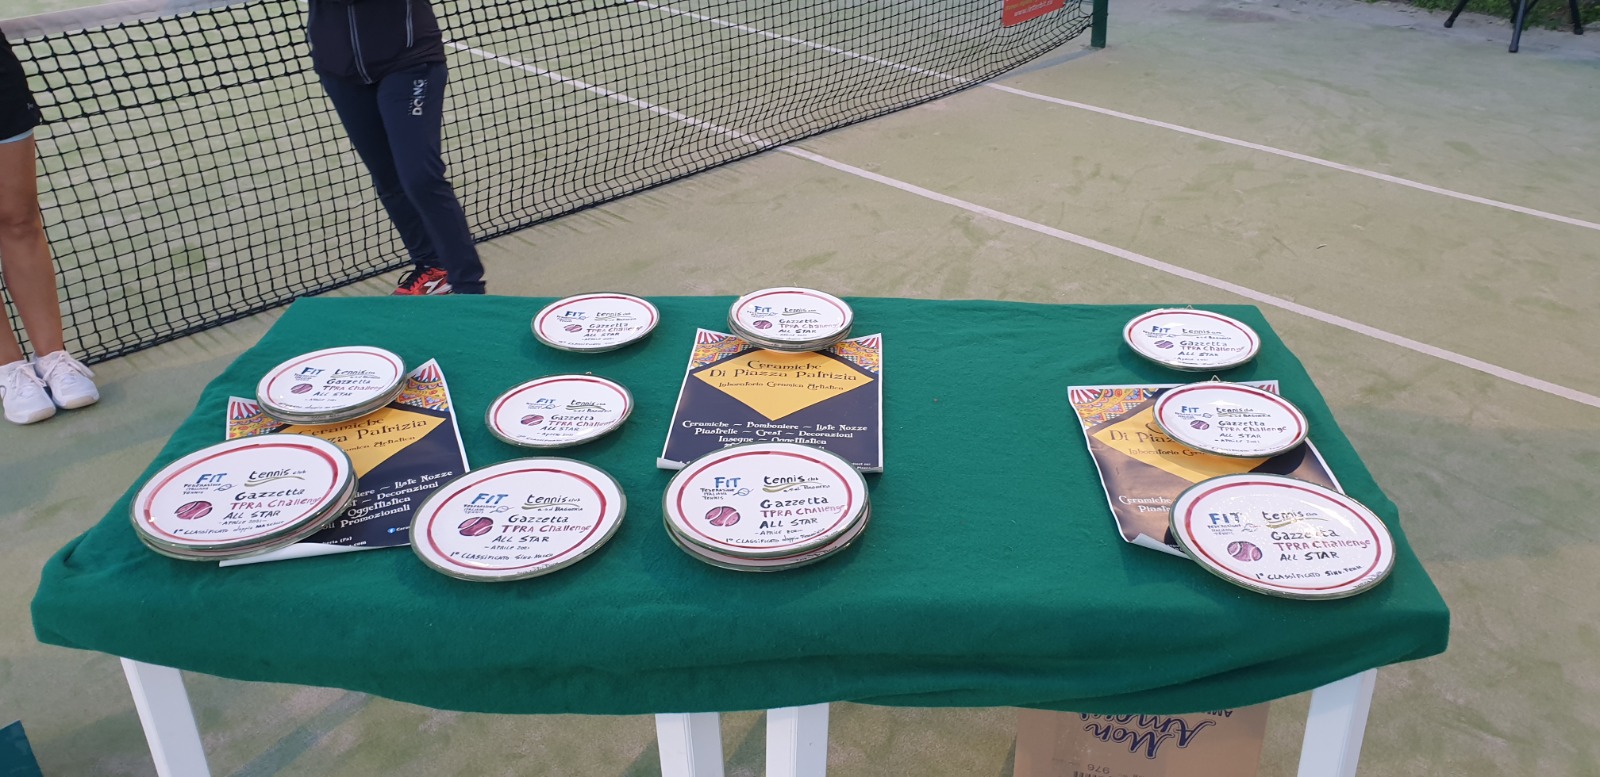 Piatti in ceramica artistica siciliana realizzati da Patrizia Di Piazza, in occasione del torneo Gazzetta TPRA Challenge 2021 al Tennis club di Bagheria